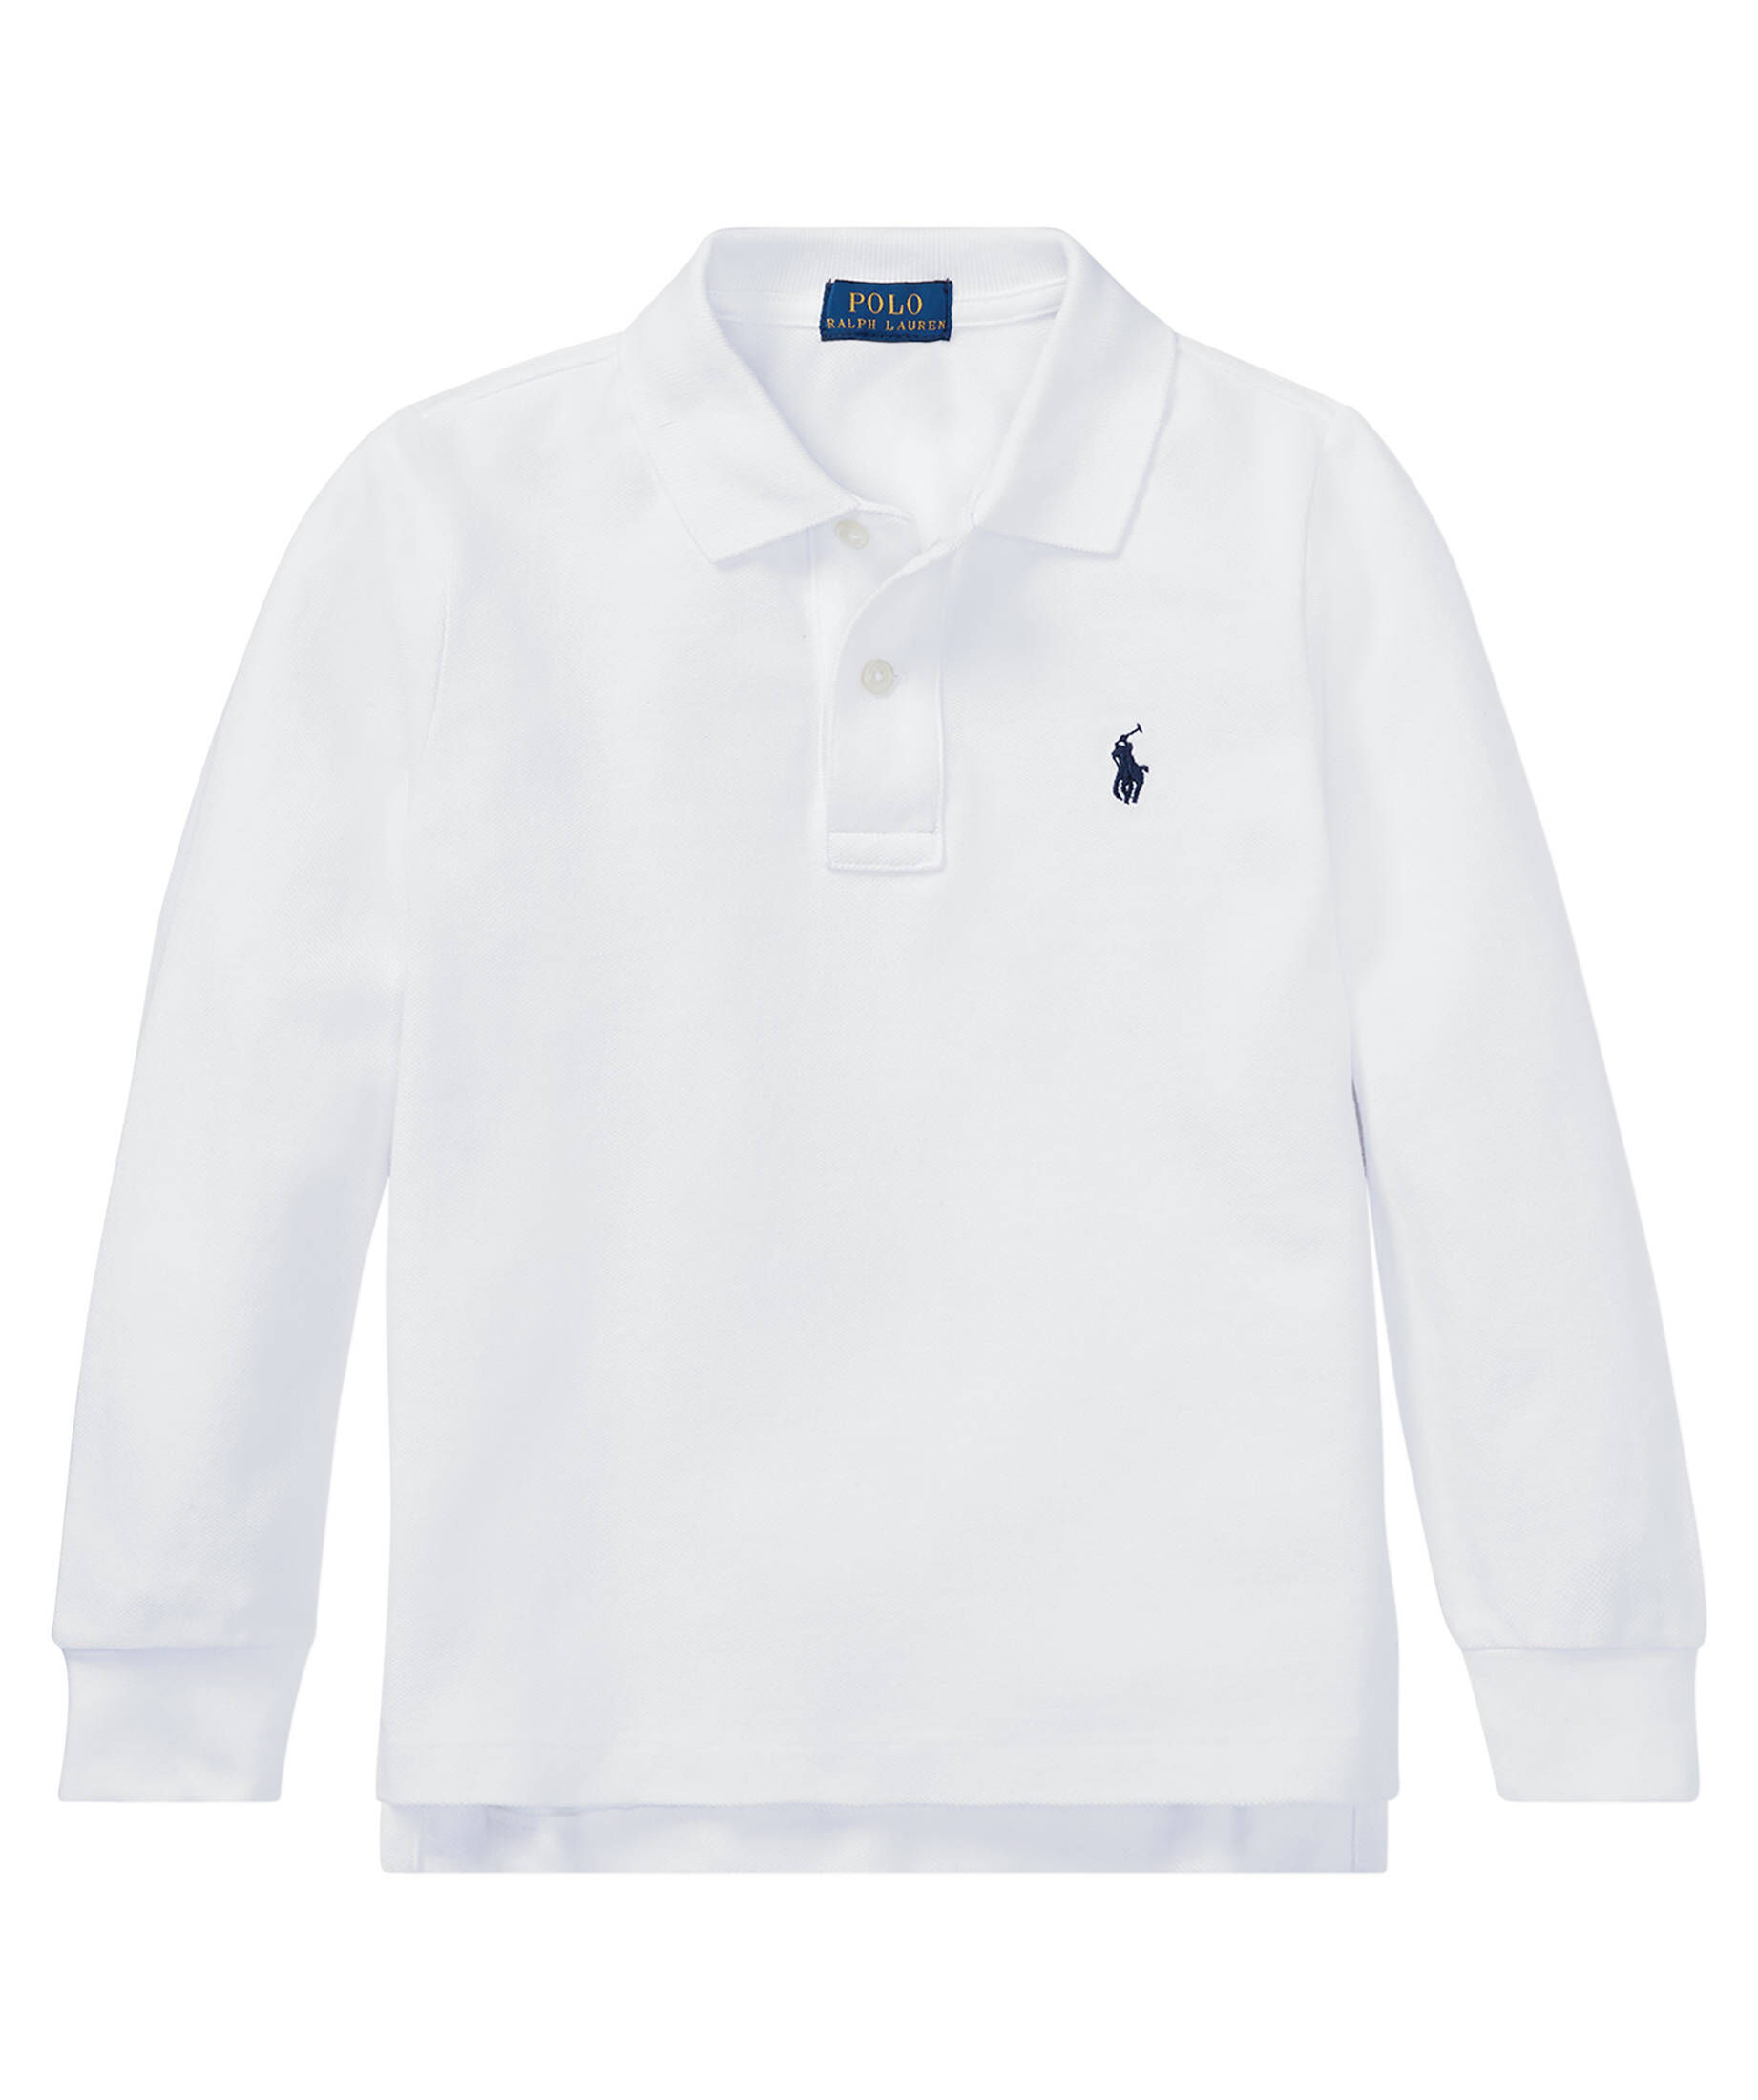 Polo Ralph Lauren Jungen Poloshirt Gr Jungen Bekleidung Shirts Poloshirts DE 128 